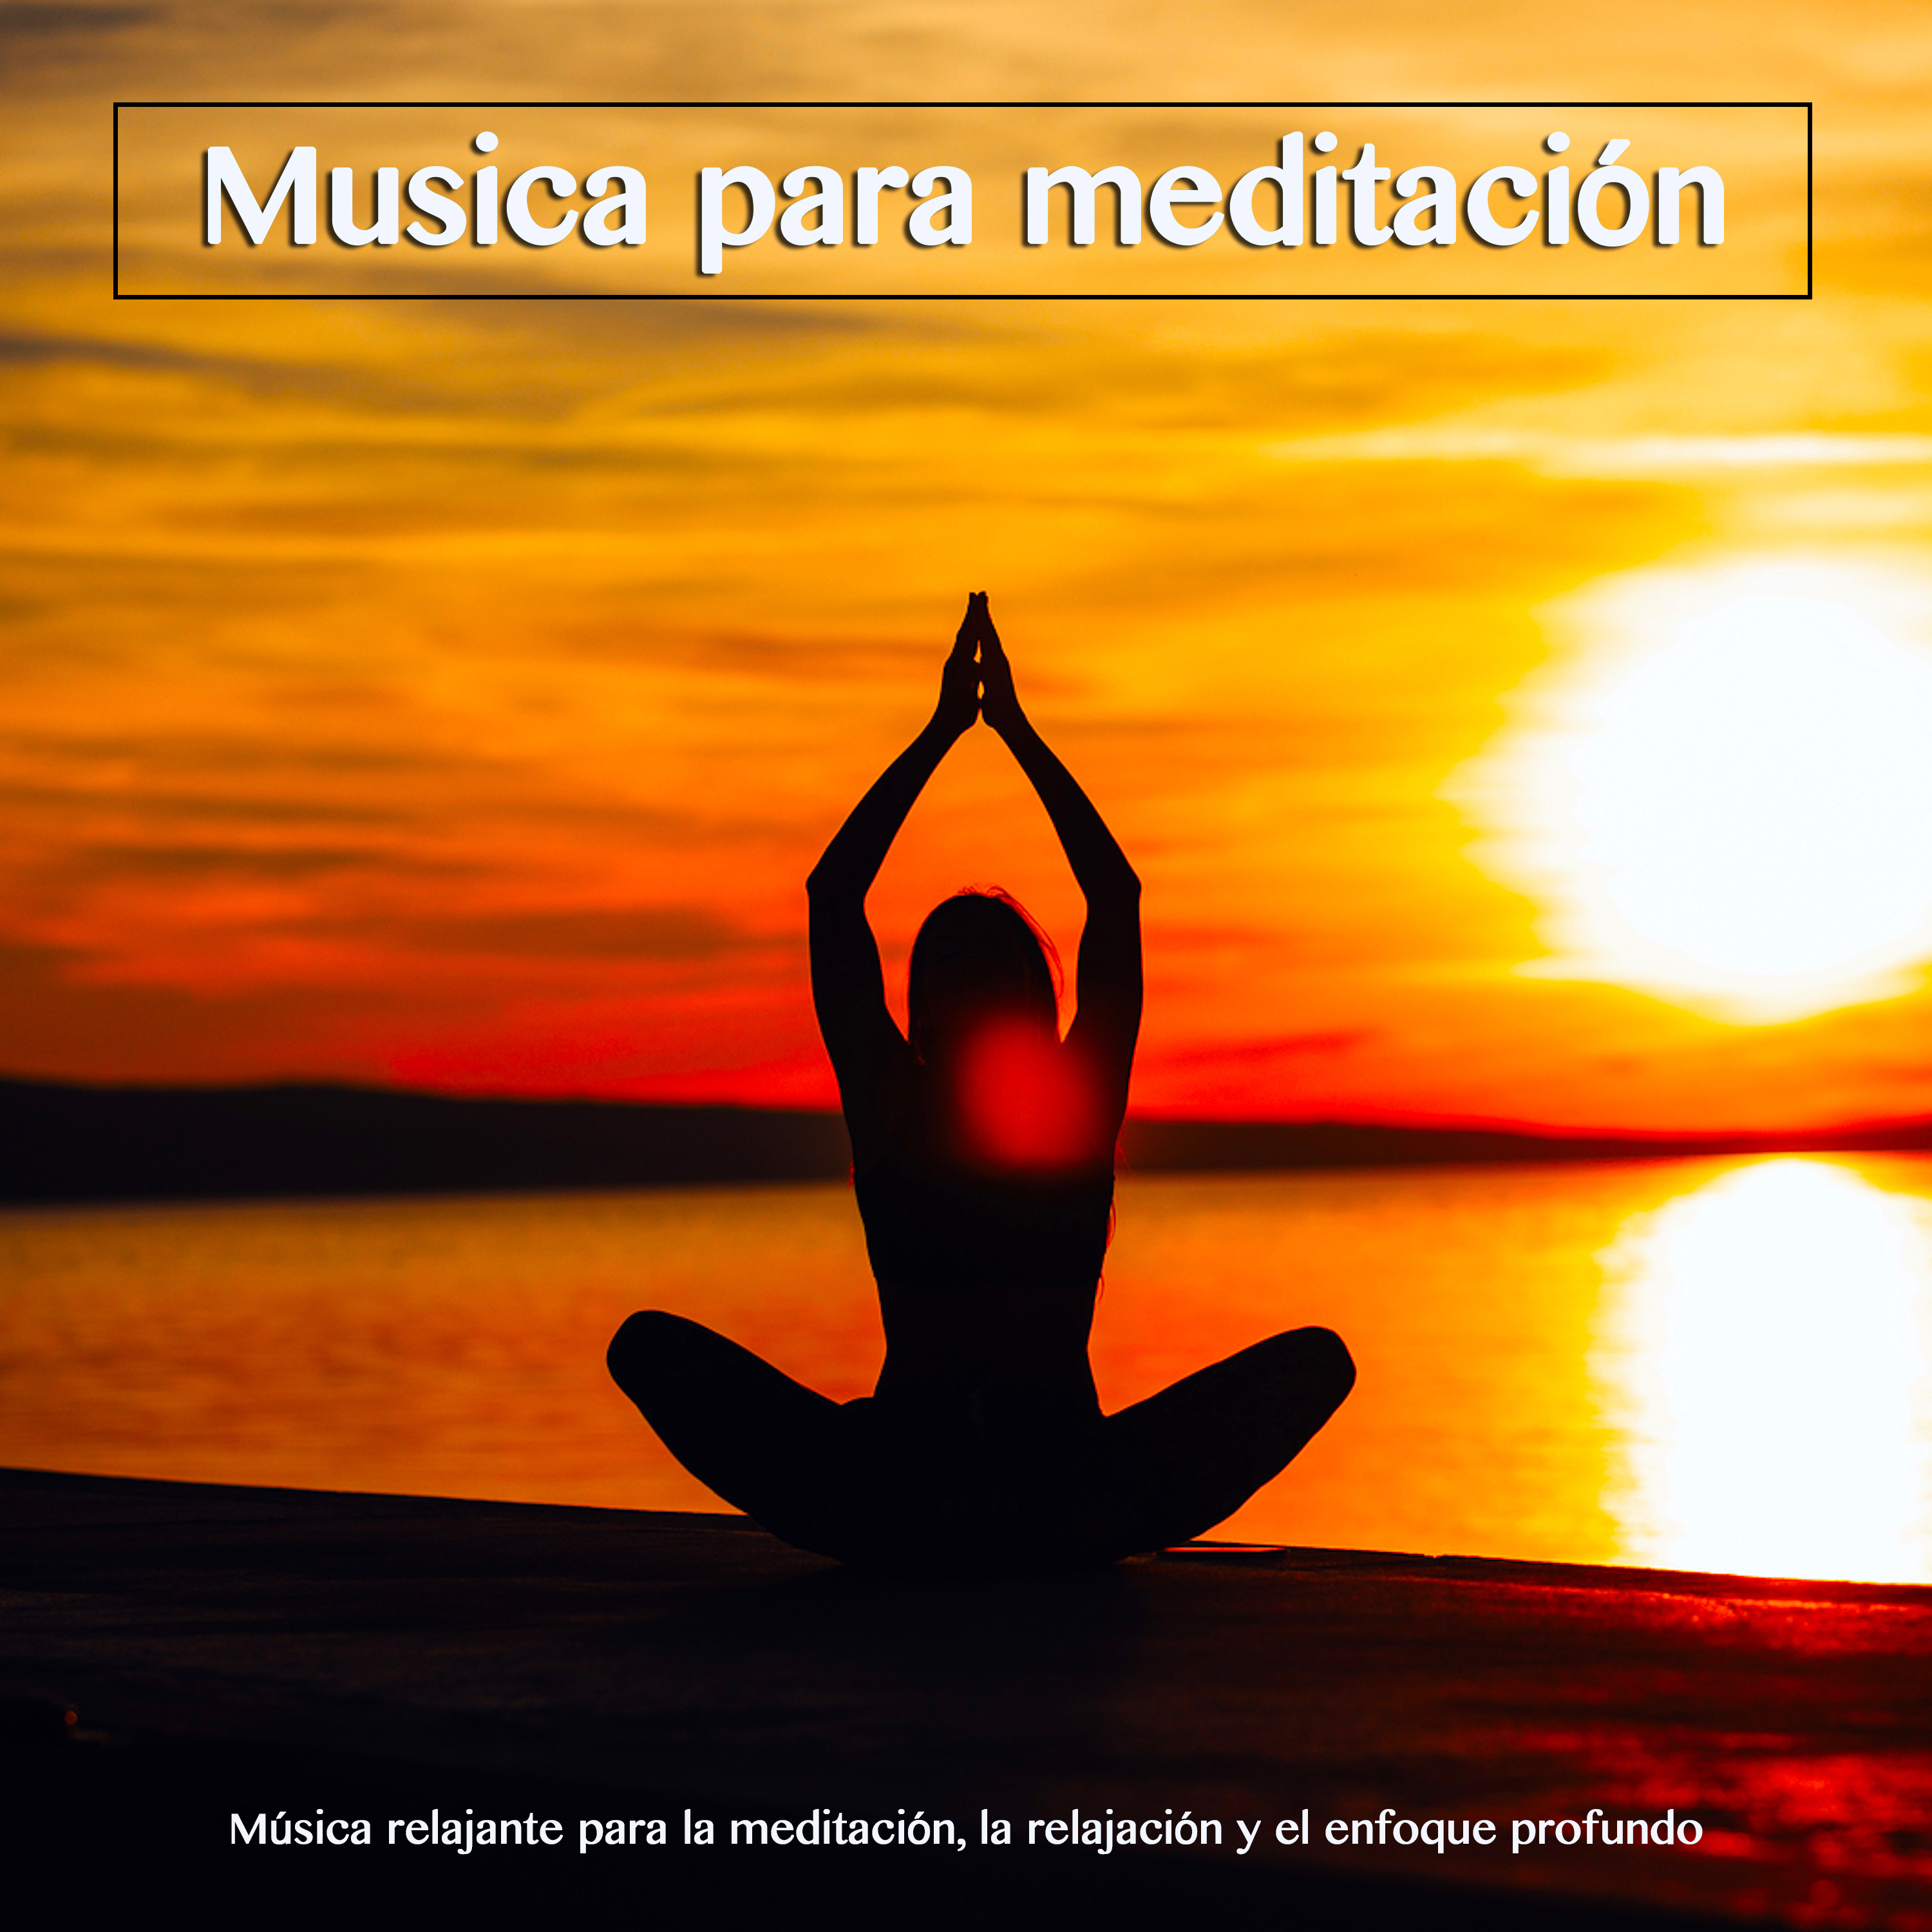 Meditacio n y Relajacio n  Mu sica instrumental